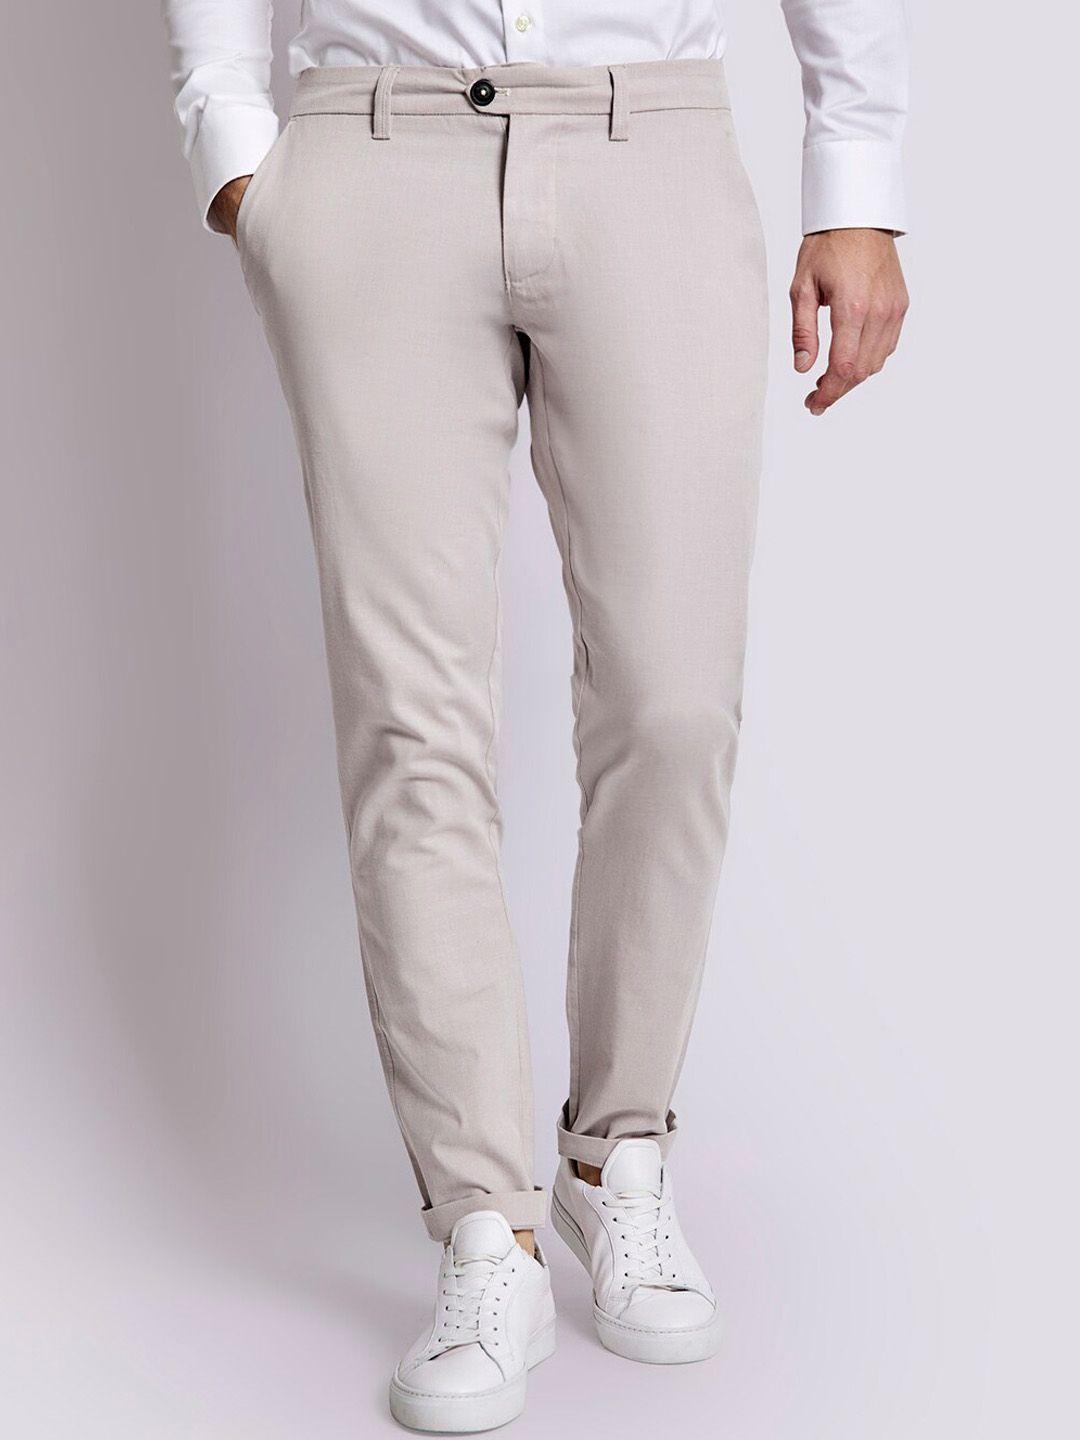 bruun-&-stengade-men-slim-fit-chinos-trousers